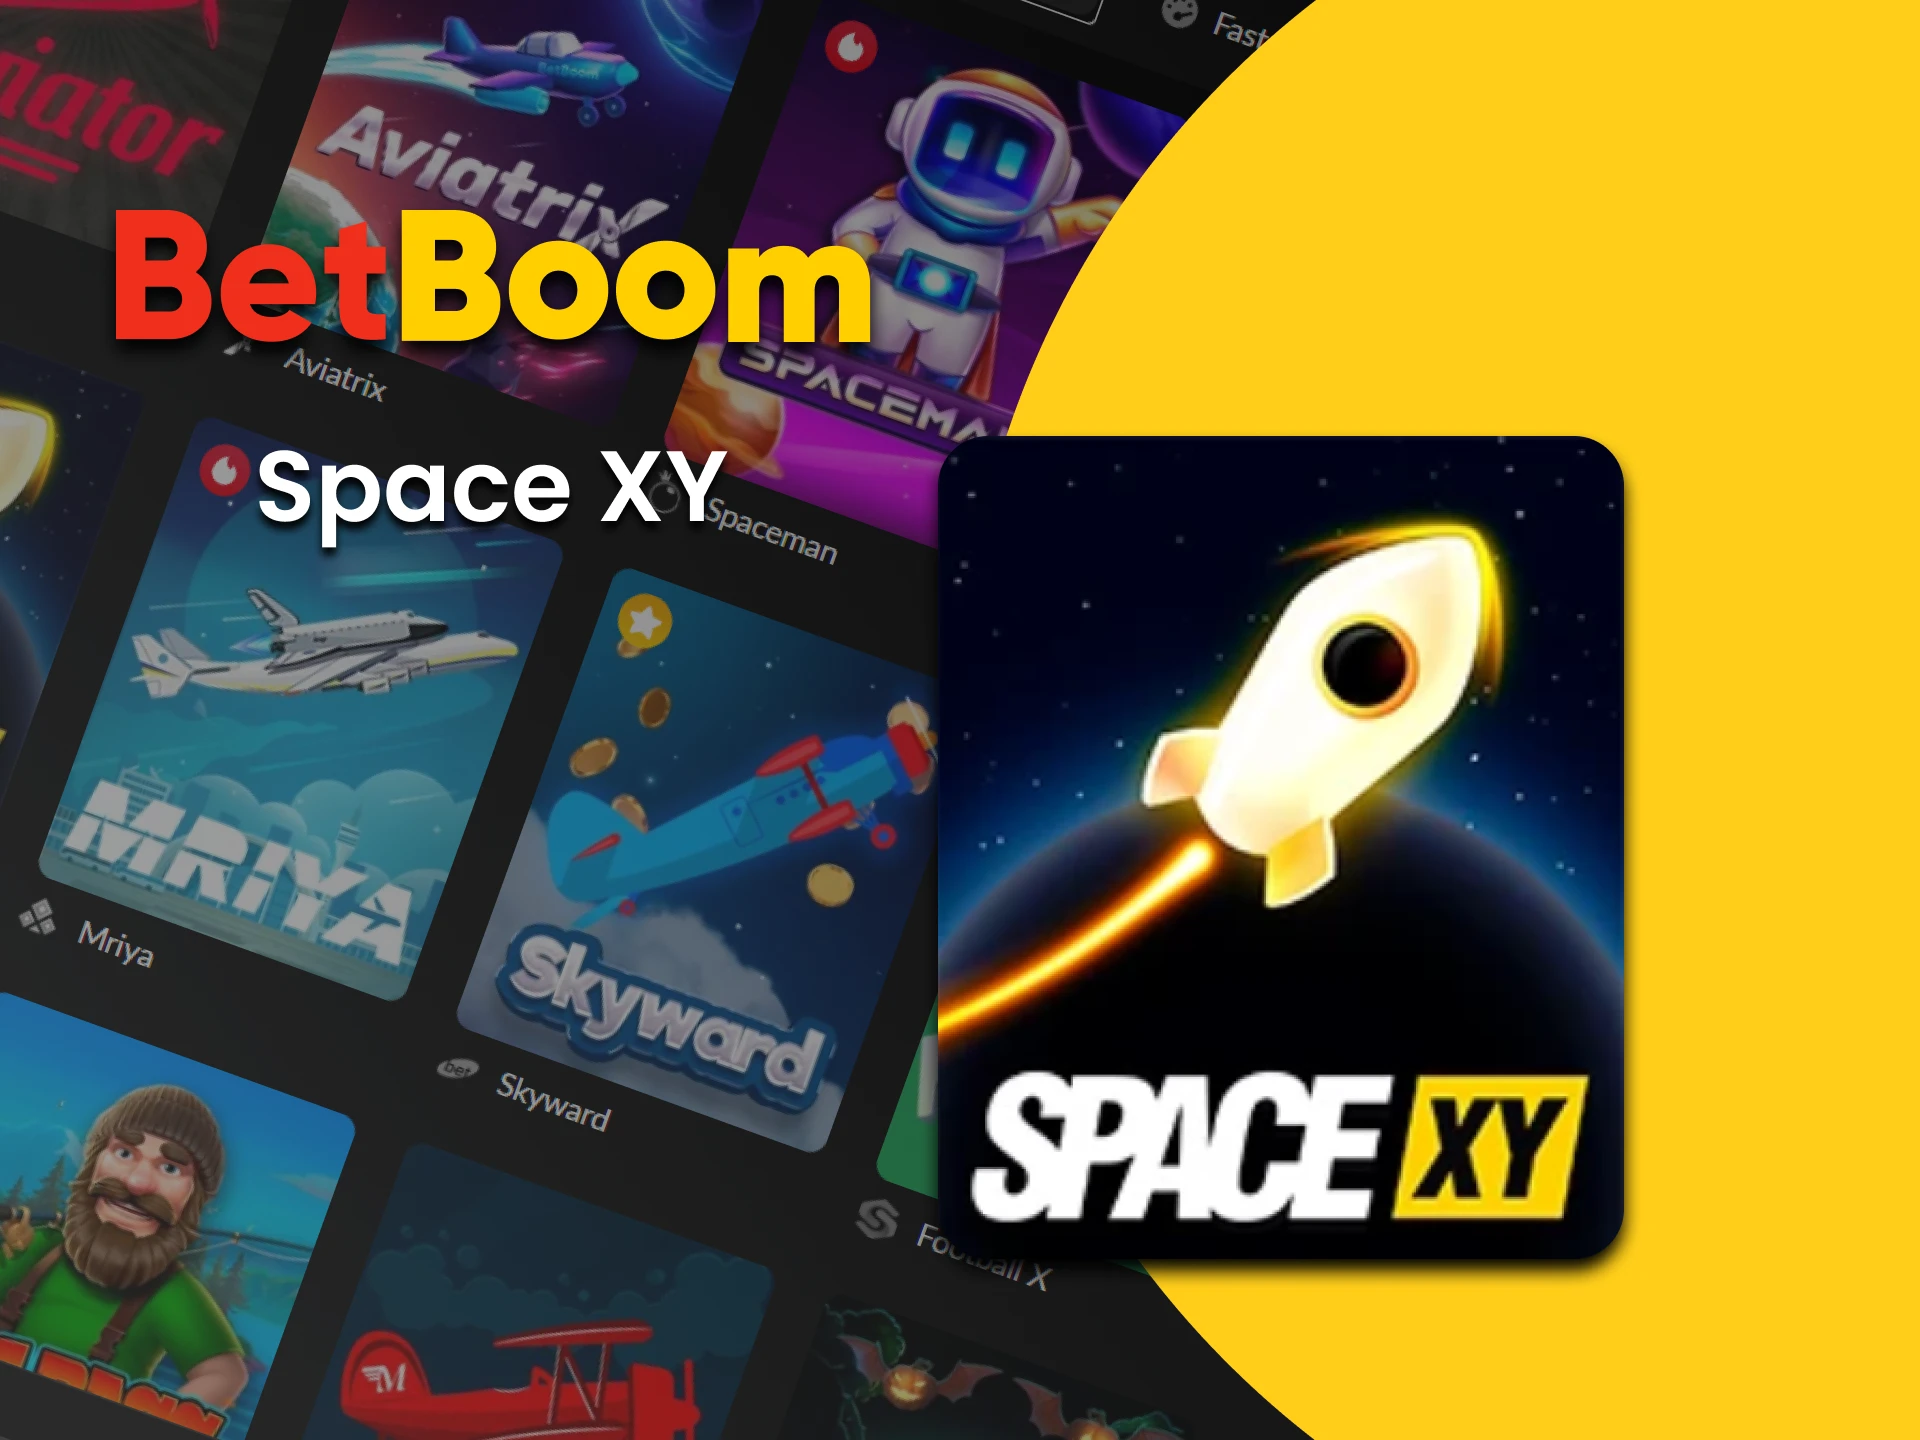 Jogue Space XY na seção Crash do BetBoom.